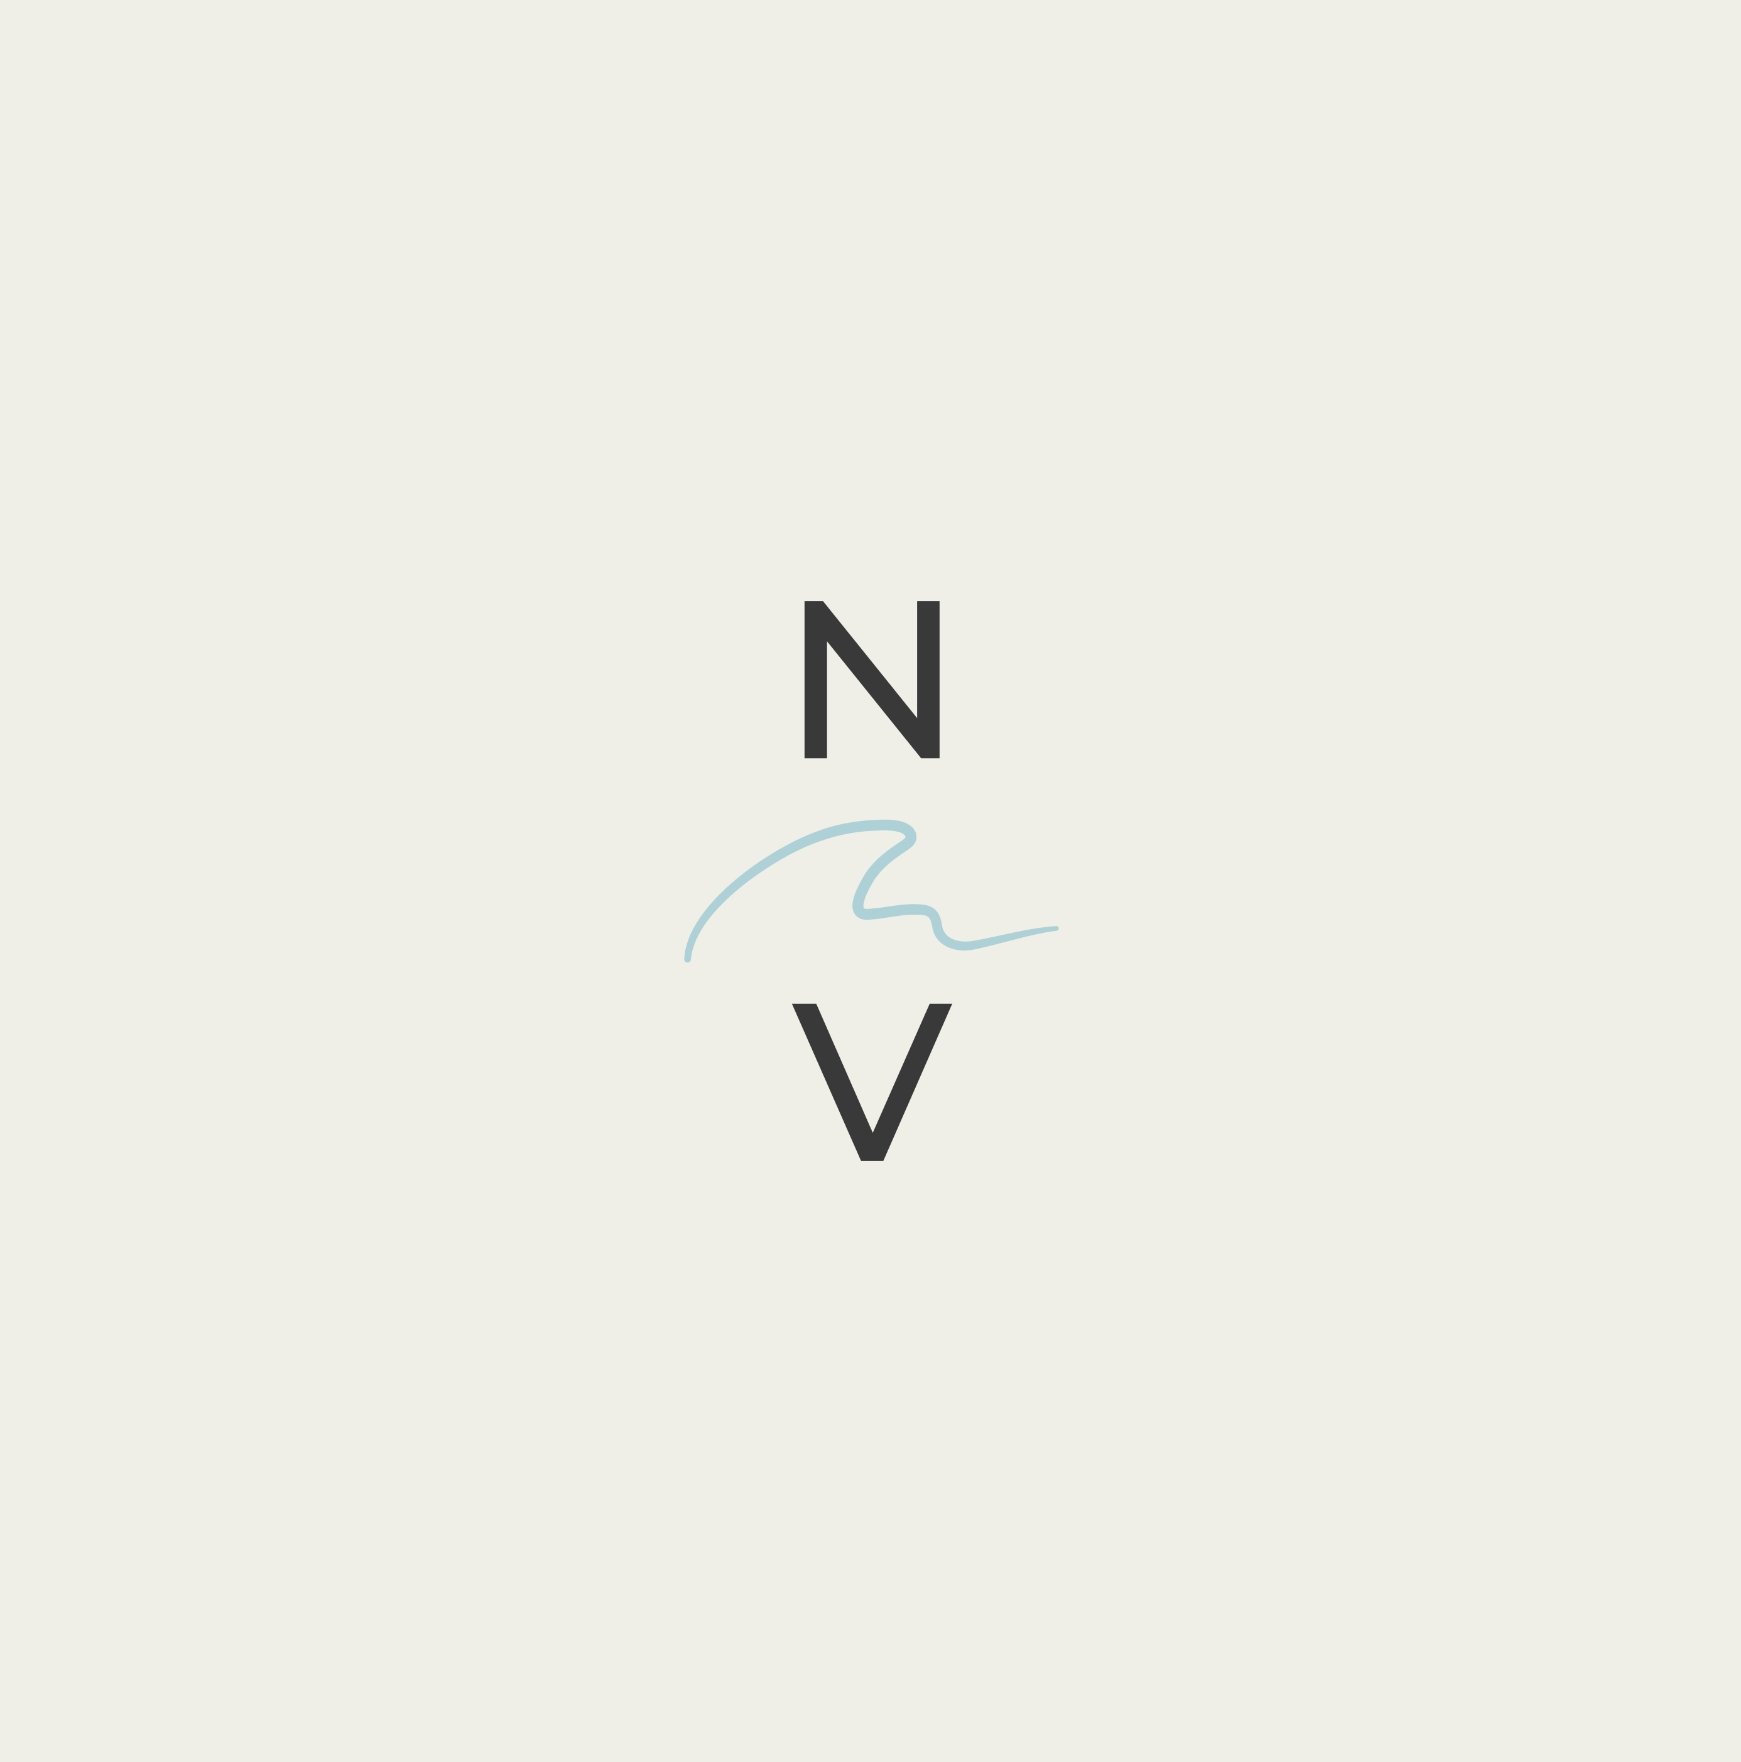 Stacked "N/V" monogram design